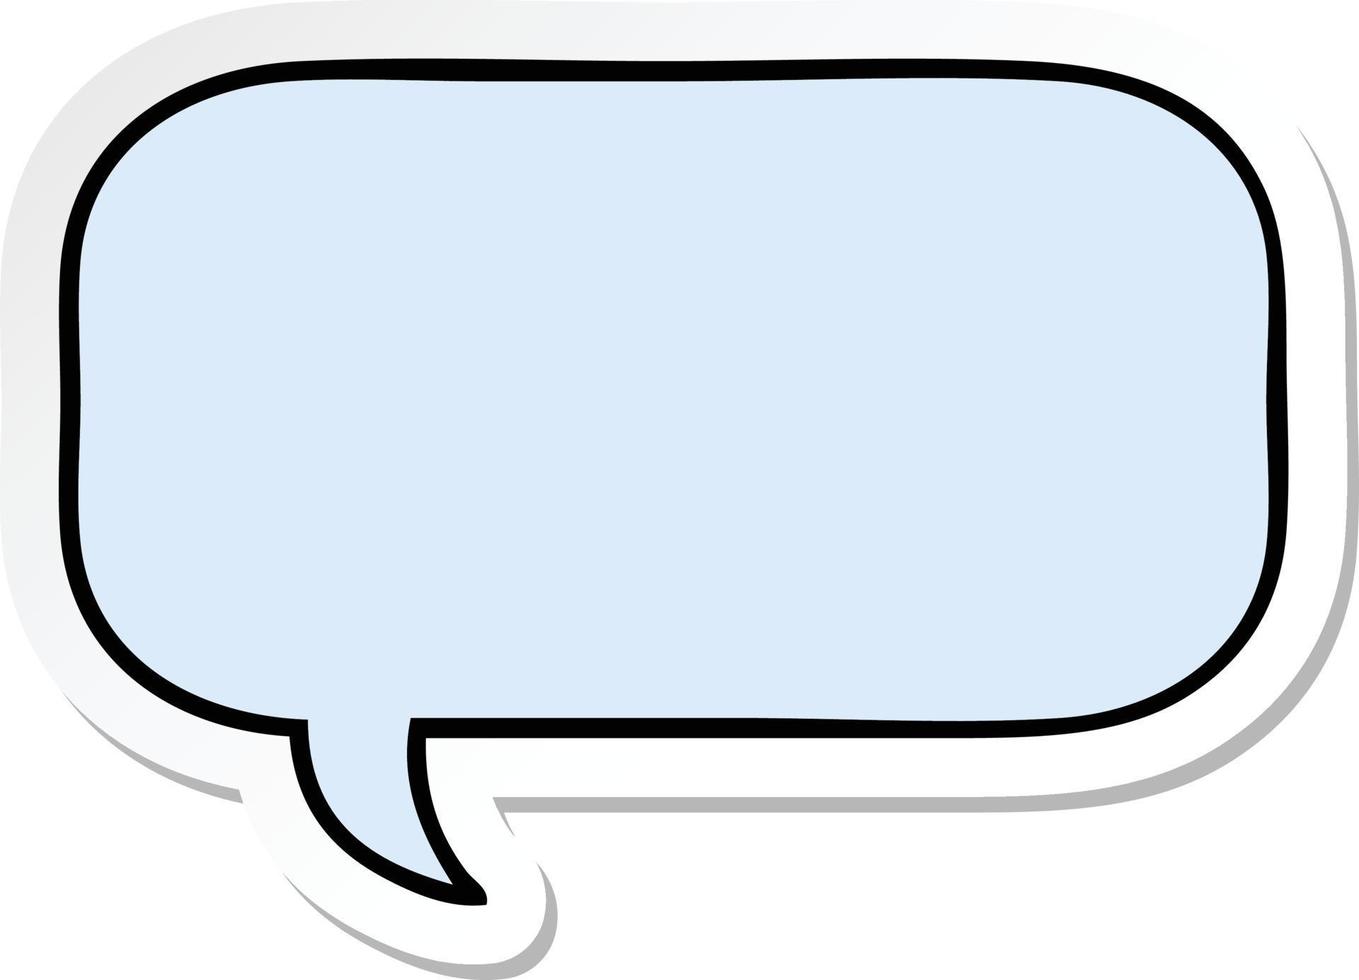 sticker of a cute cartoon speech bubble vector